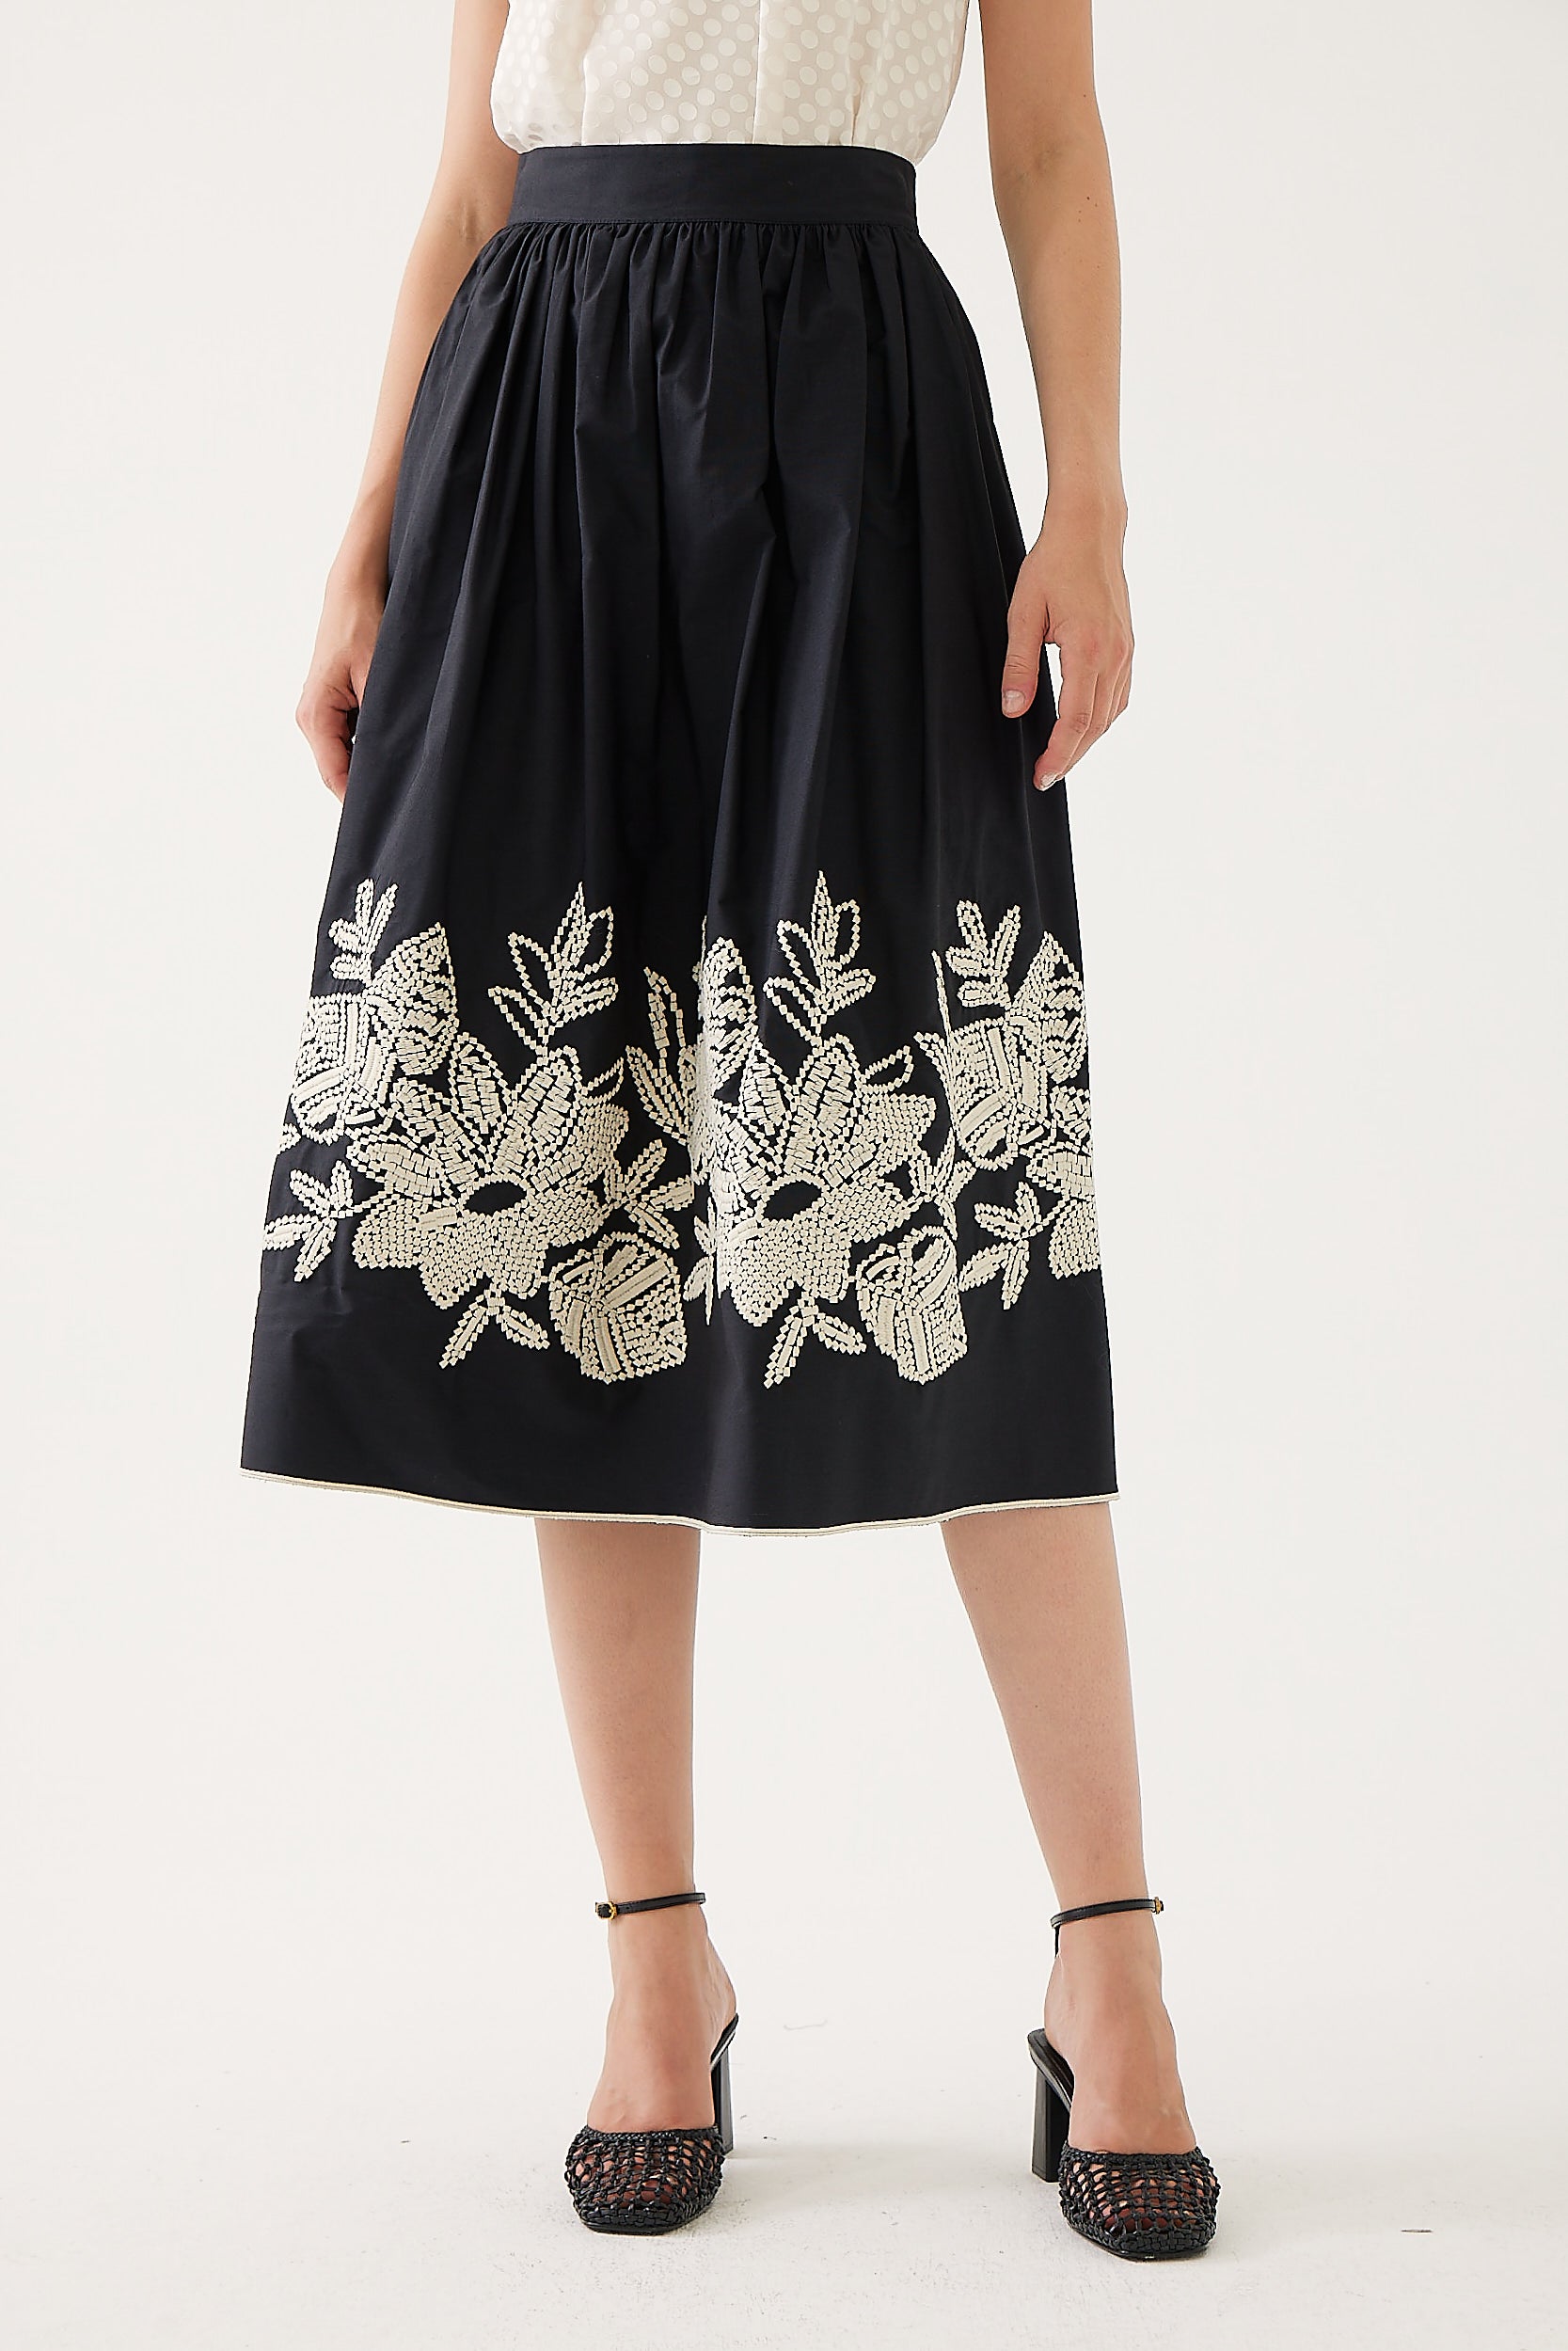 Karla Black Embroidered Skirt